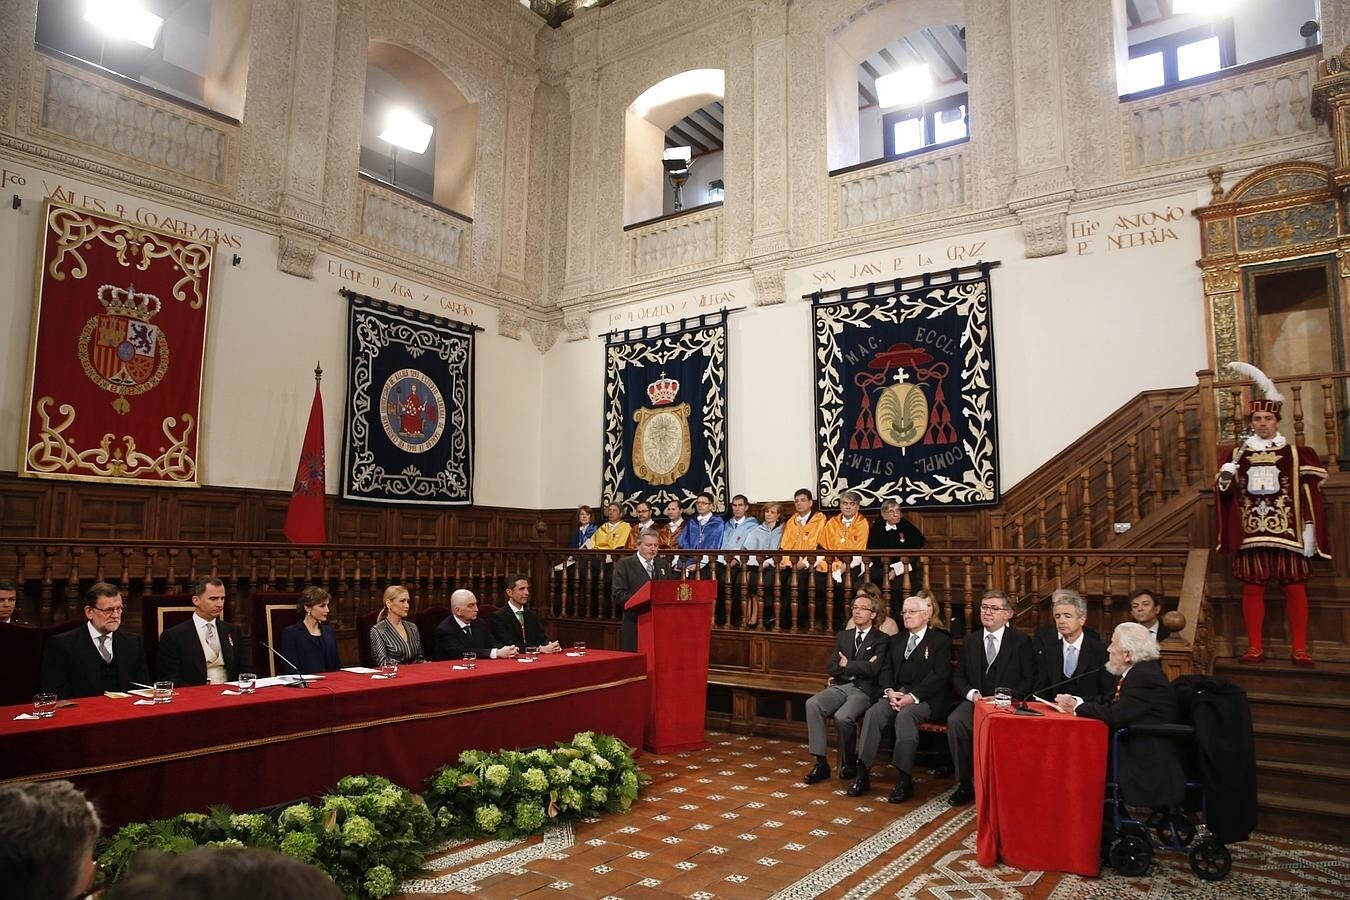 El paraninfo de la Universidad de Alcalá de Henares, donde se celebra la ceremonia de entrega del Premio Cervantes